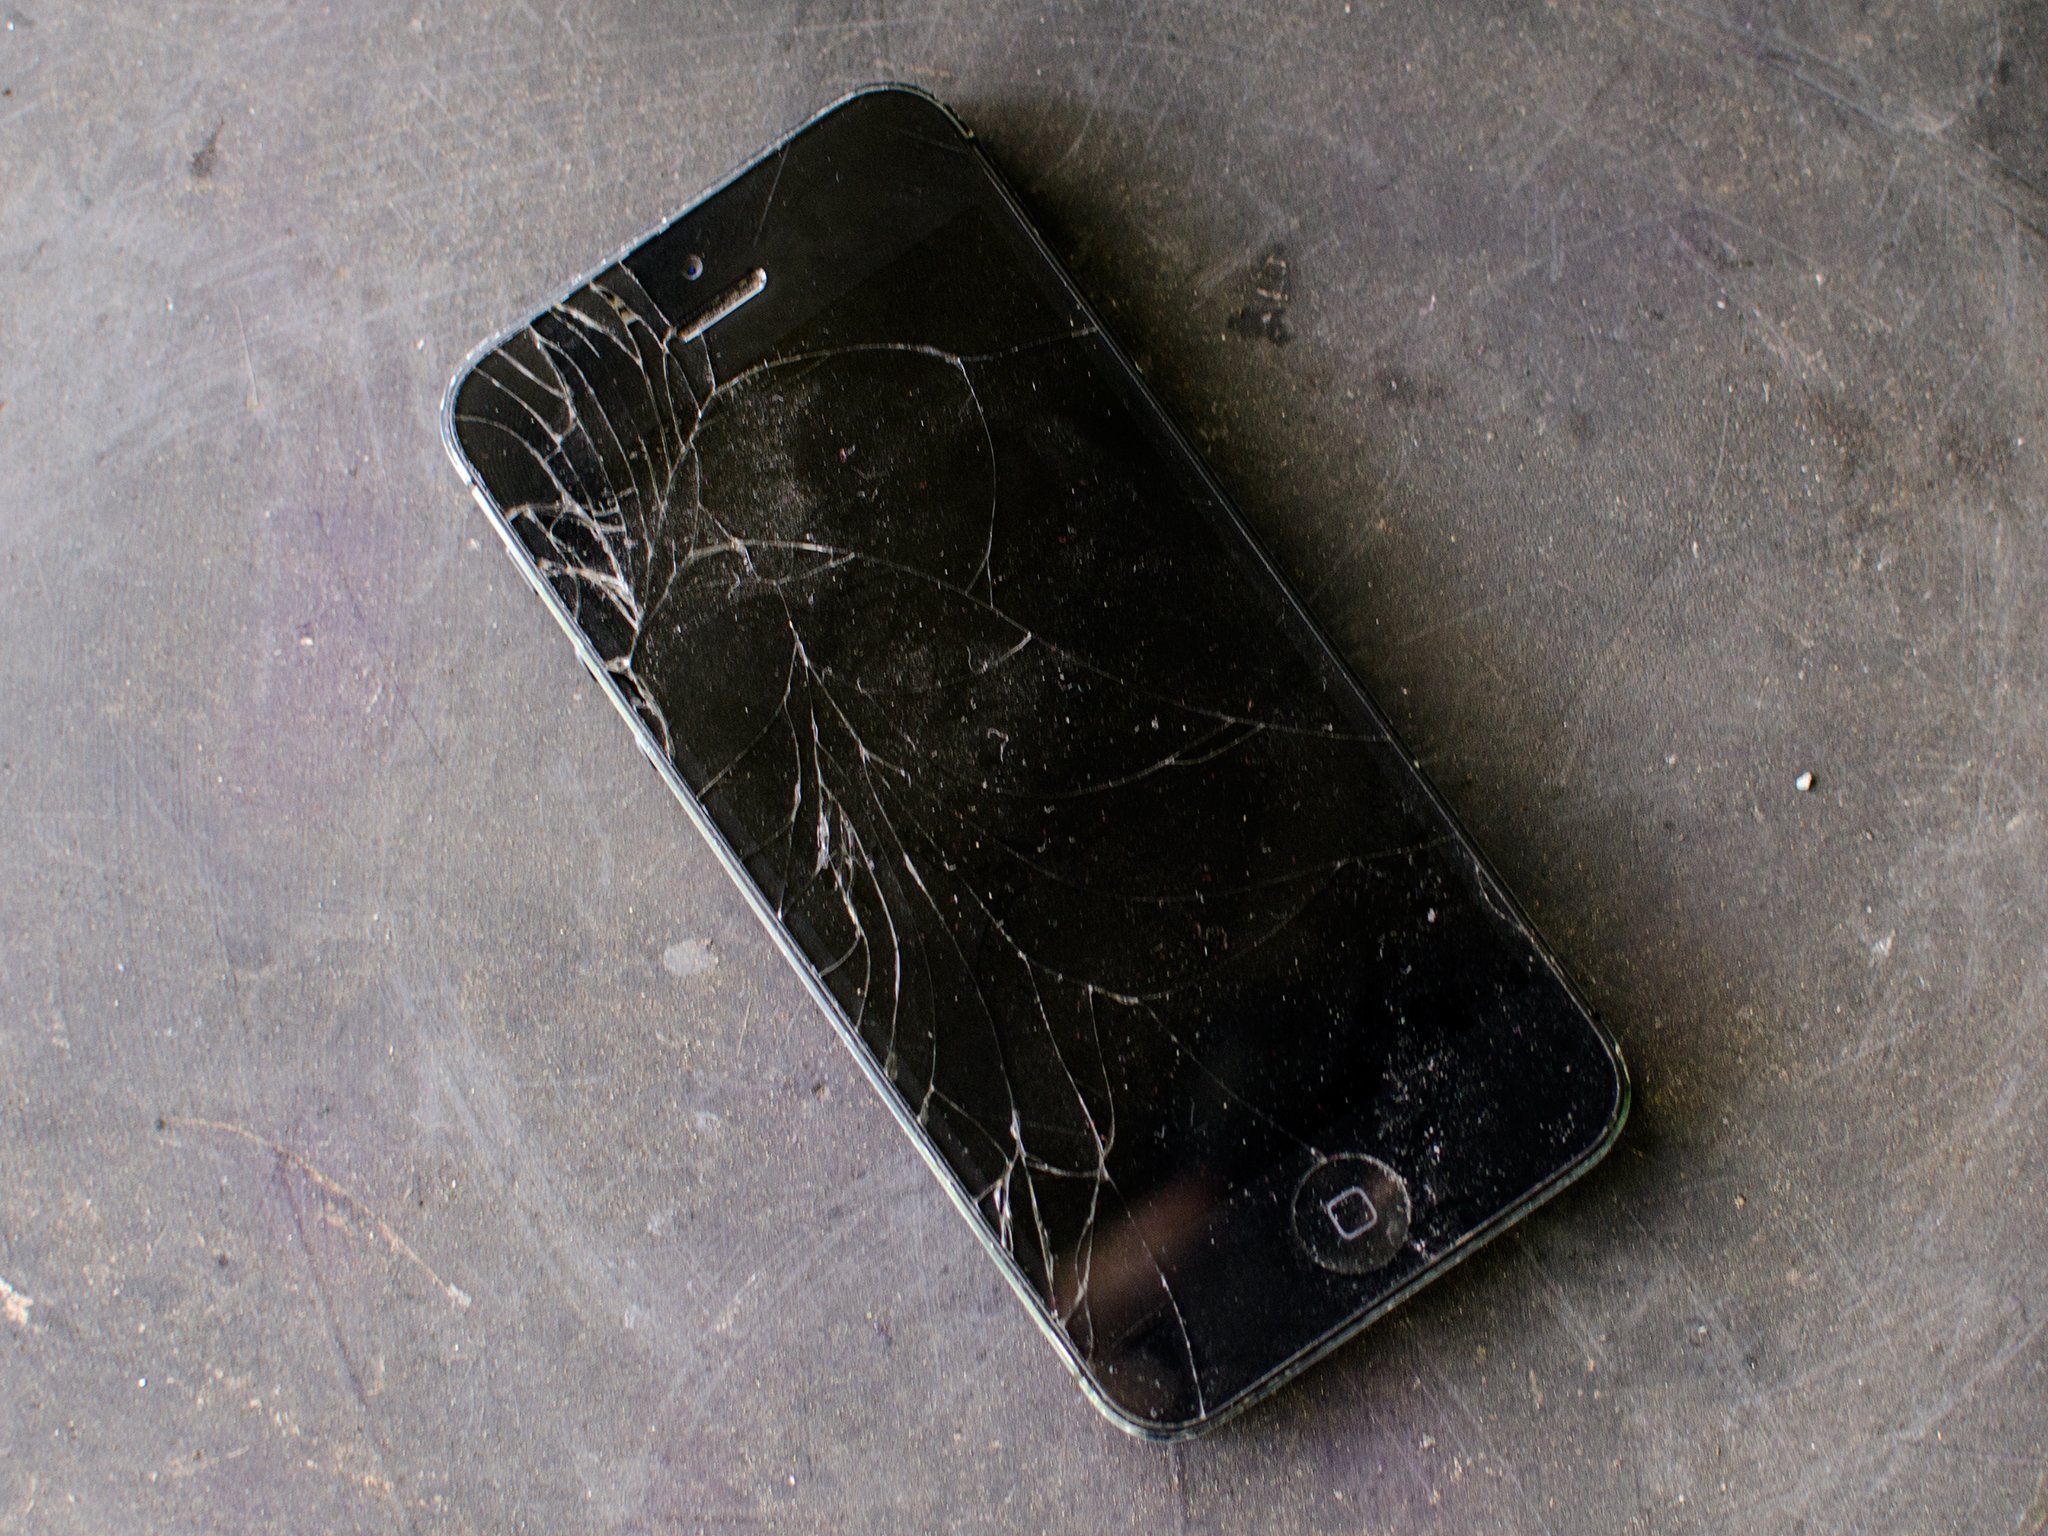 iphone-5-broken-smashed-hero.jpg